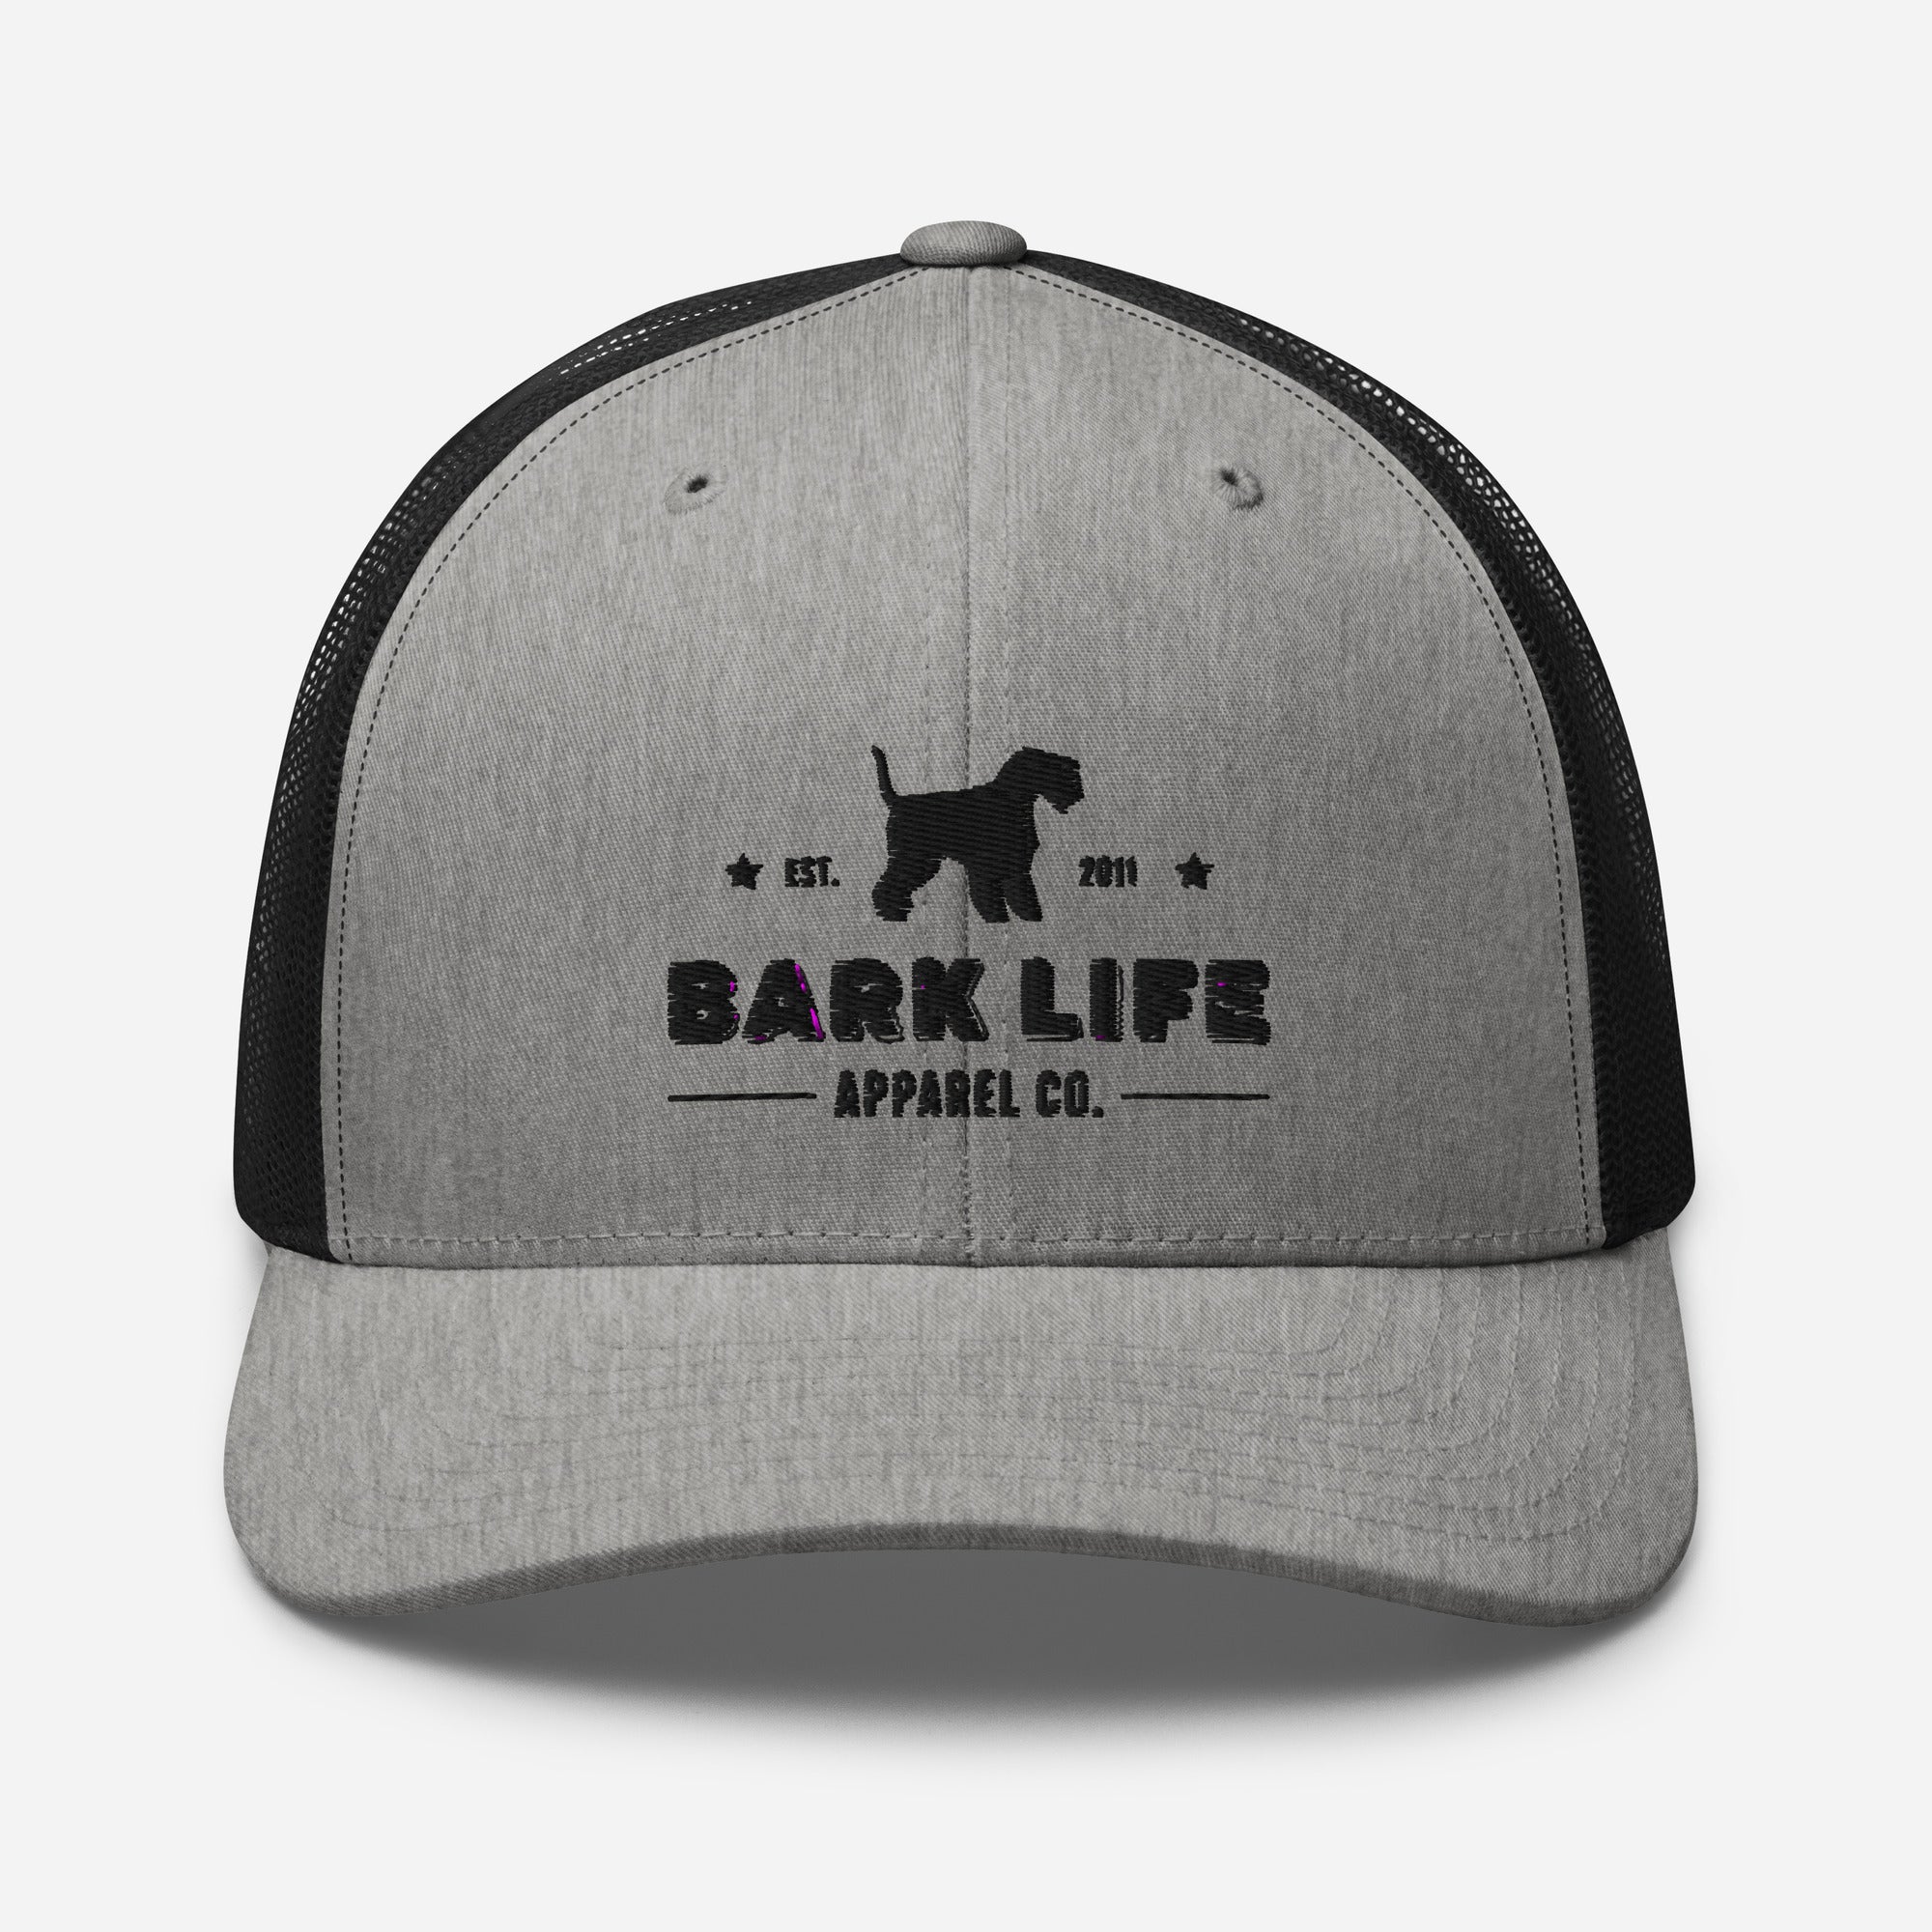 Lakeland Terrier - Hat